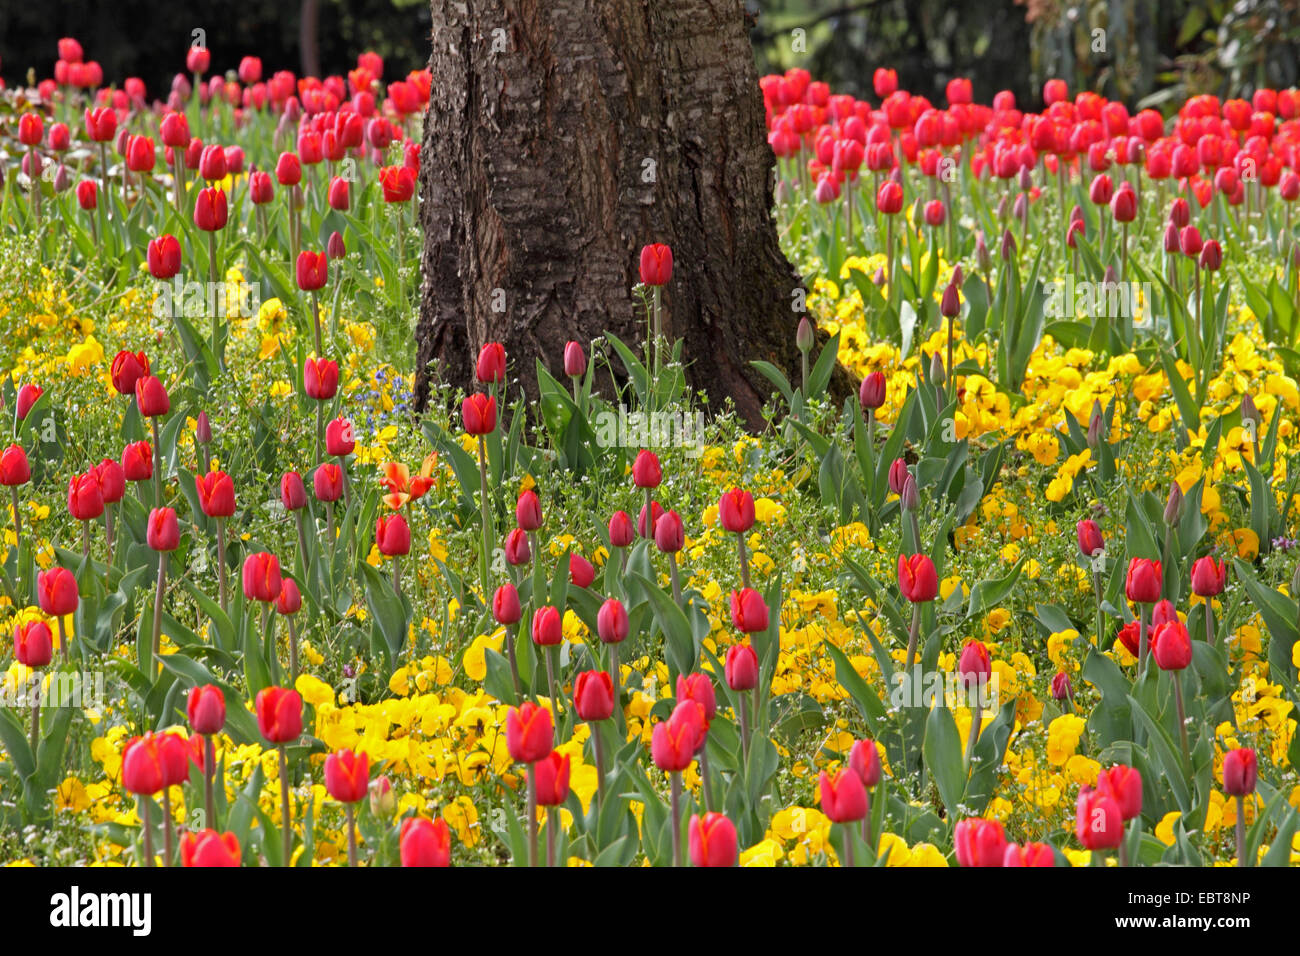 Giardino in comune tulip (Tulipa gesneriana), un grande numero di tulipani rossi e giallo pansies in un letto di fiori attorno a un albero in un parco, Germania Foto Stock